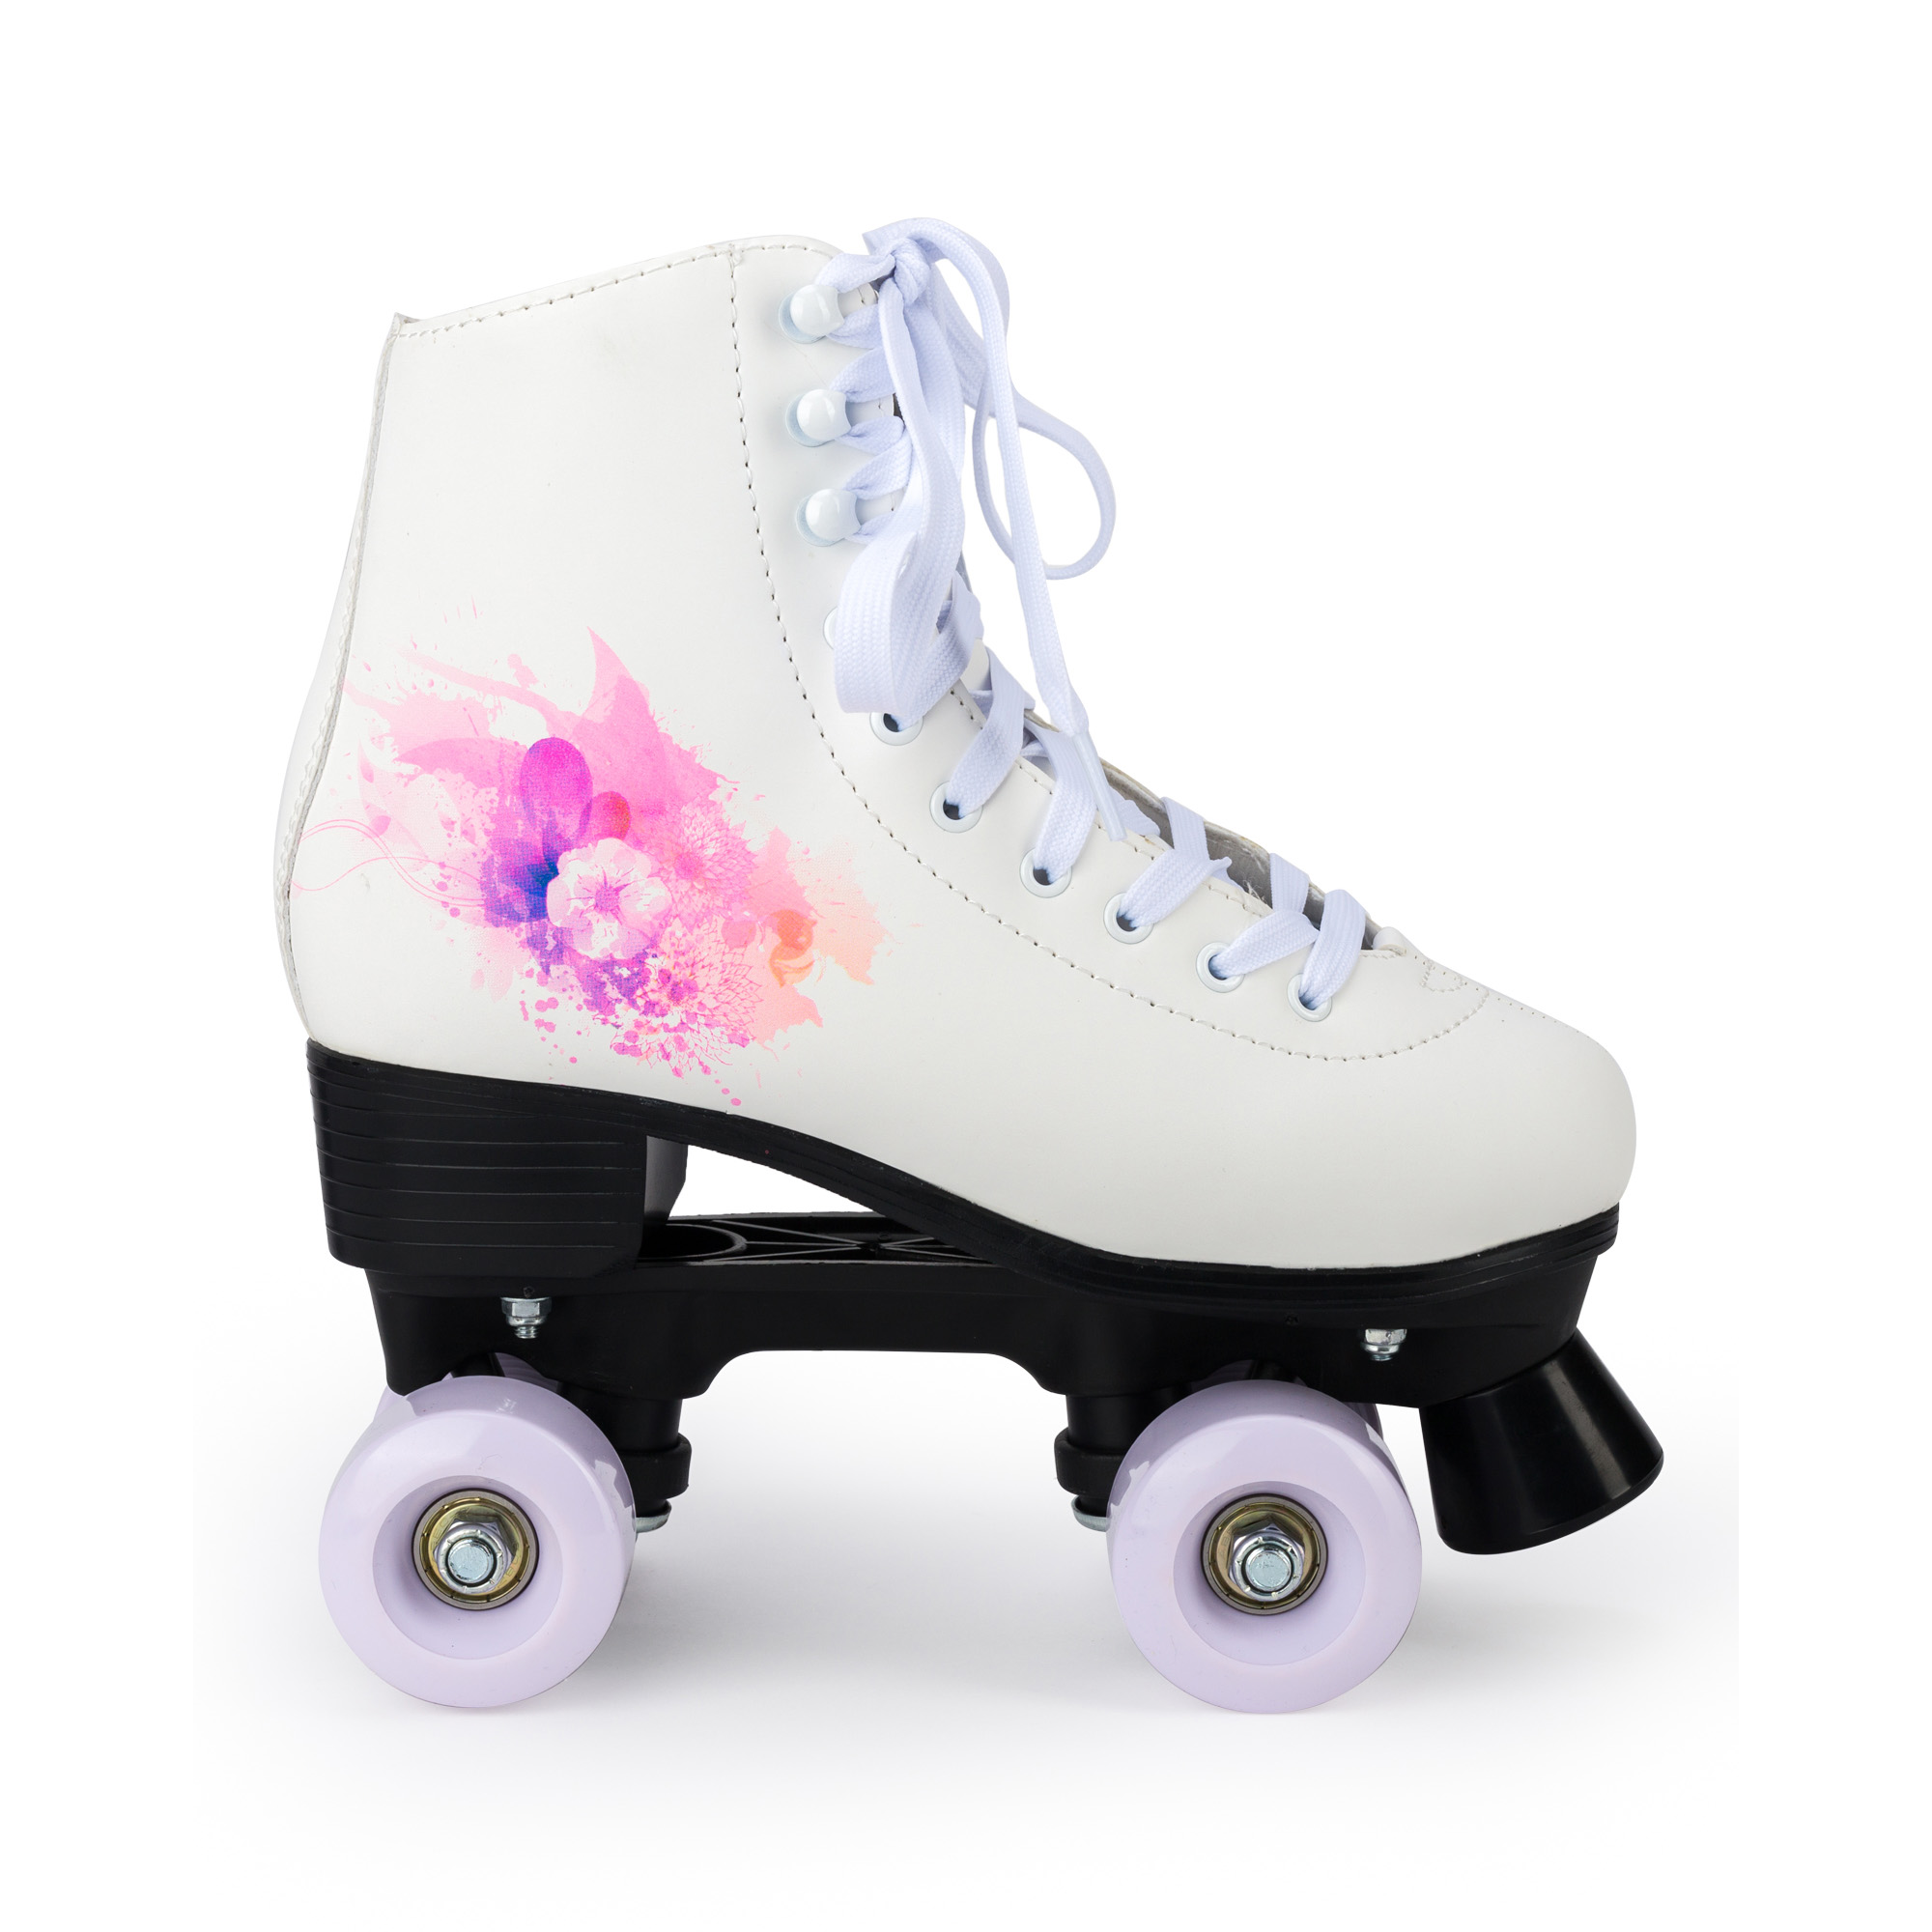 Роликовые коньки SXRide Roller skate YXSKT04WPUR36 белые с фиолетово-розовым орнаментом 36 - фото 2